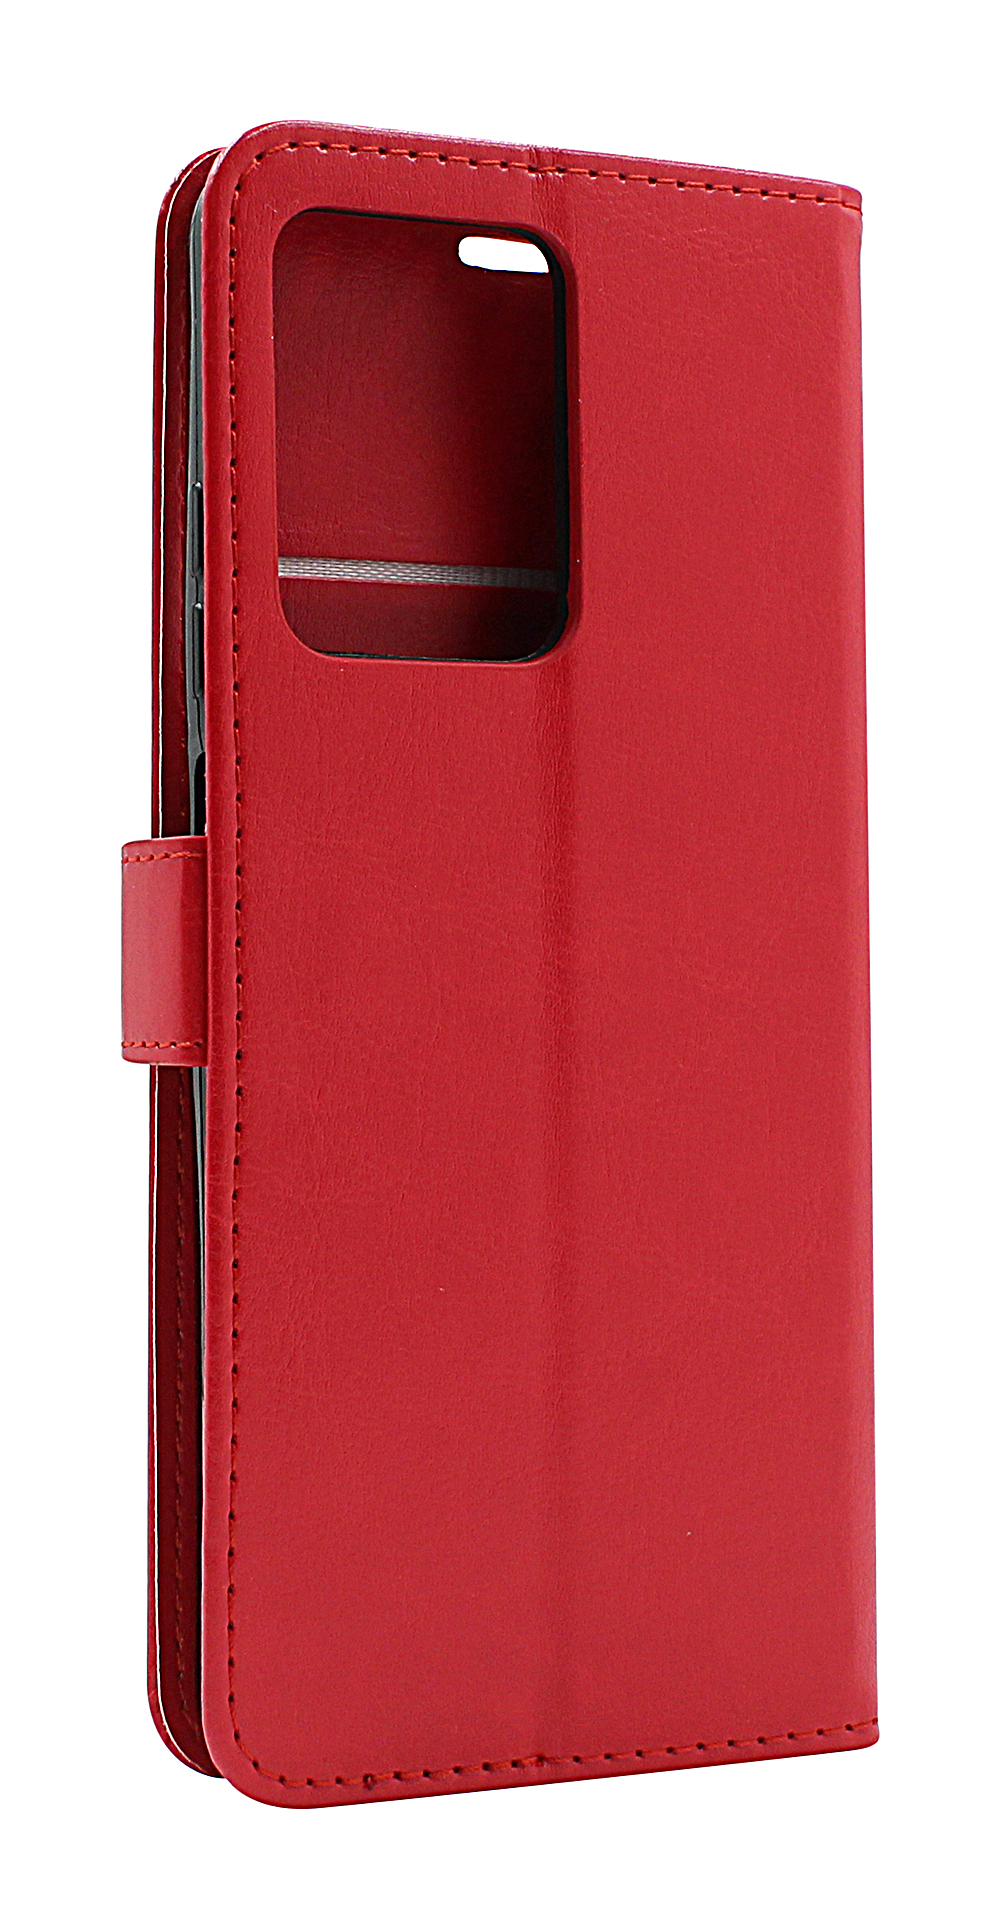 billigamobilskydd.seCrazy Horse Wallet Xiaomi Redmi Note 12 Pro 5G